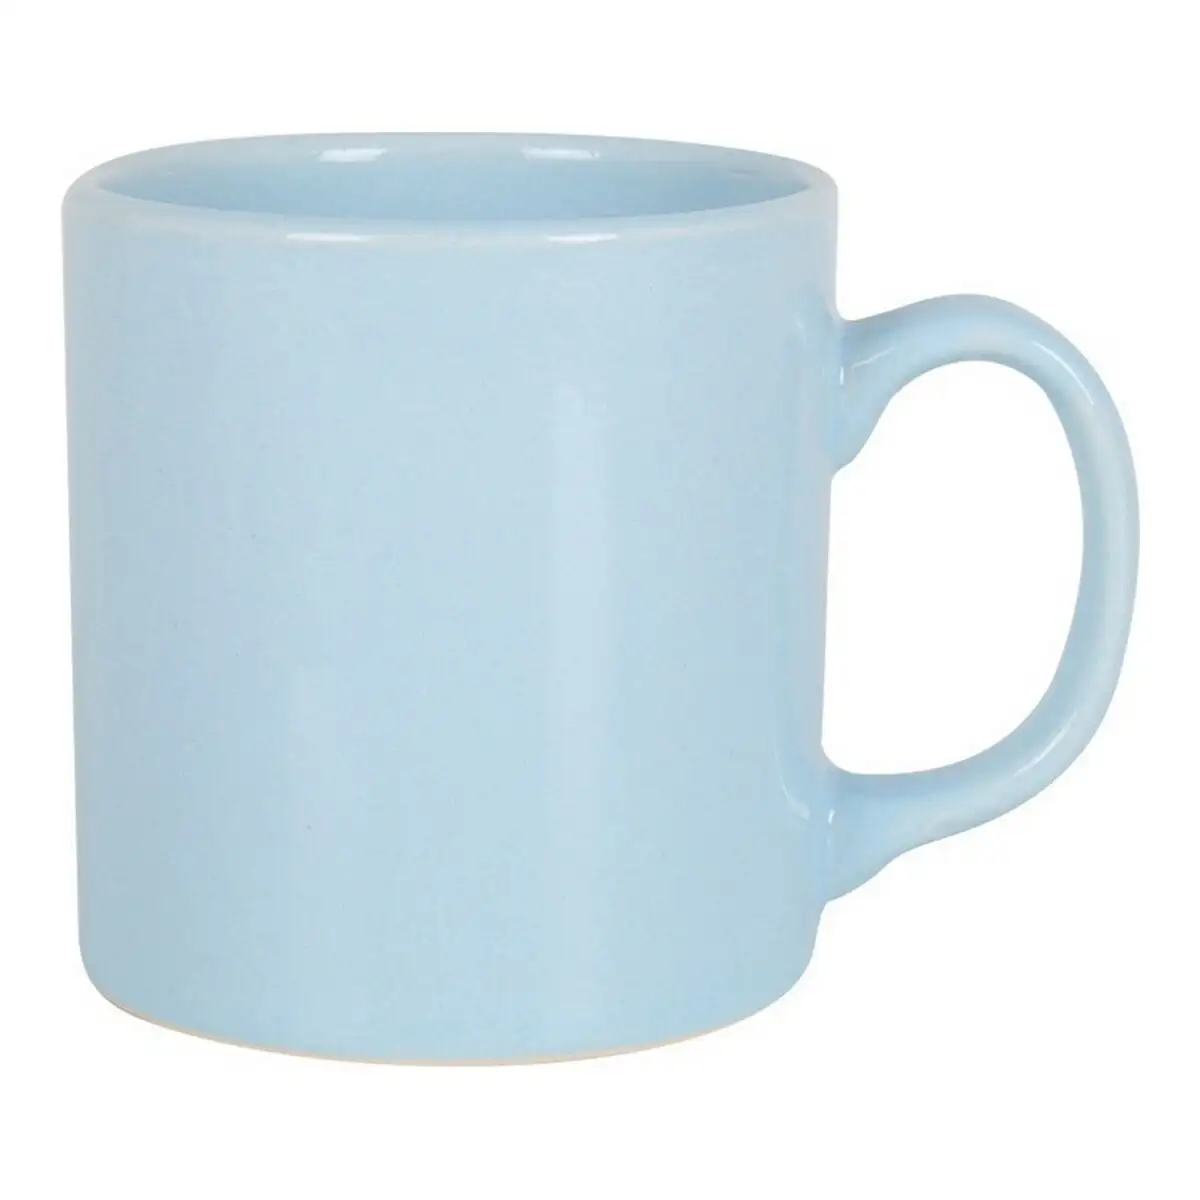 Tasse mug brioche ceramique bleu 350 cc _1384. DIAYTAR SENEGAL - Là où Chaque Produit Est une Trouvaille. Parcourez notre catalogue diversifié et découvrez des articles qui enrichiront votre quotidien, du pratique à l'insolite.